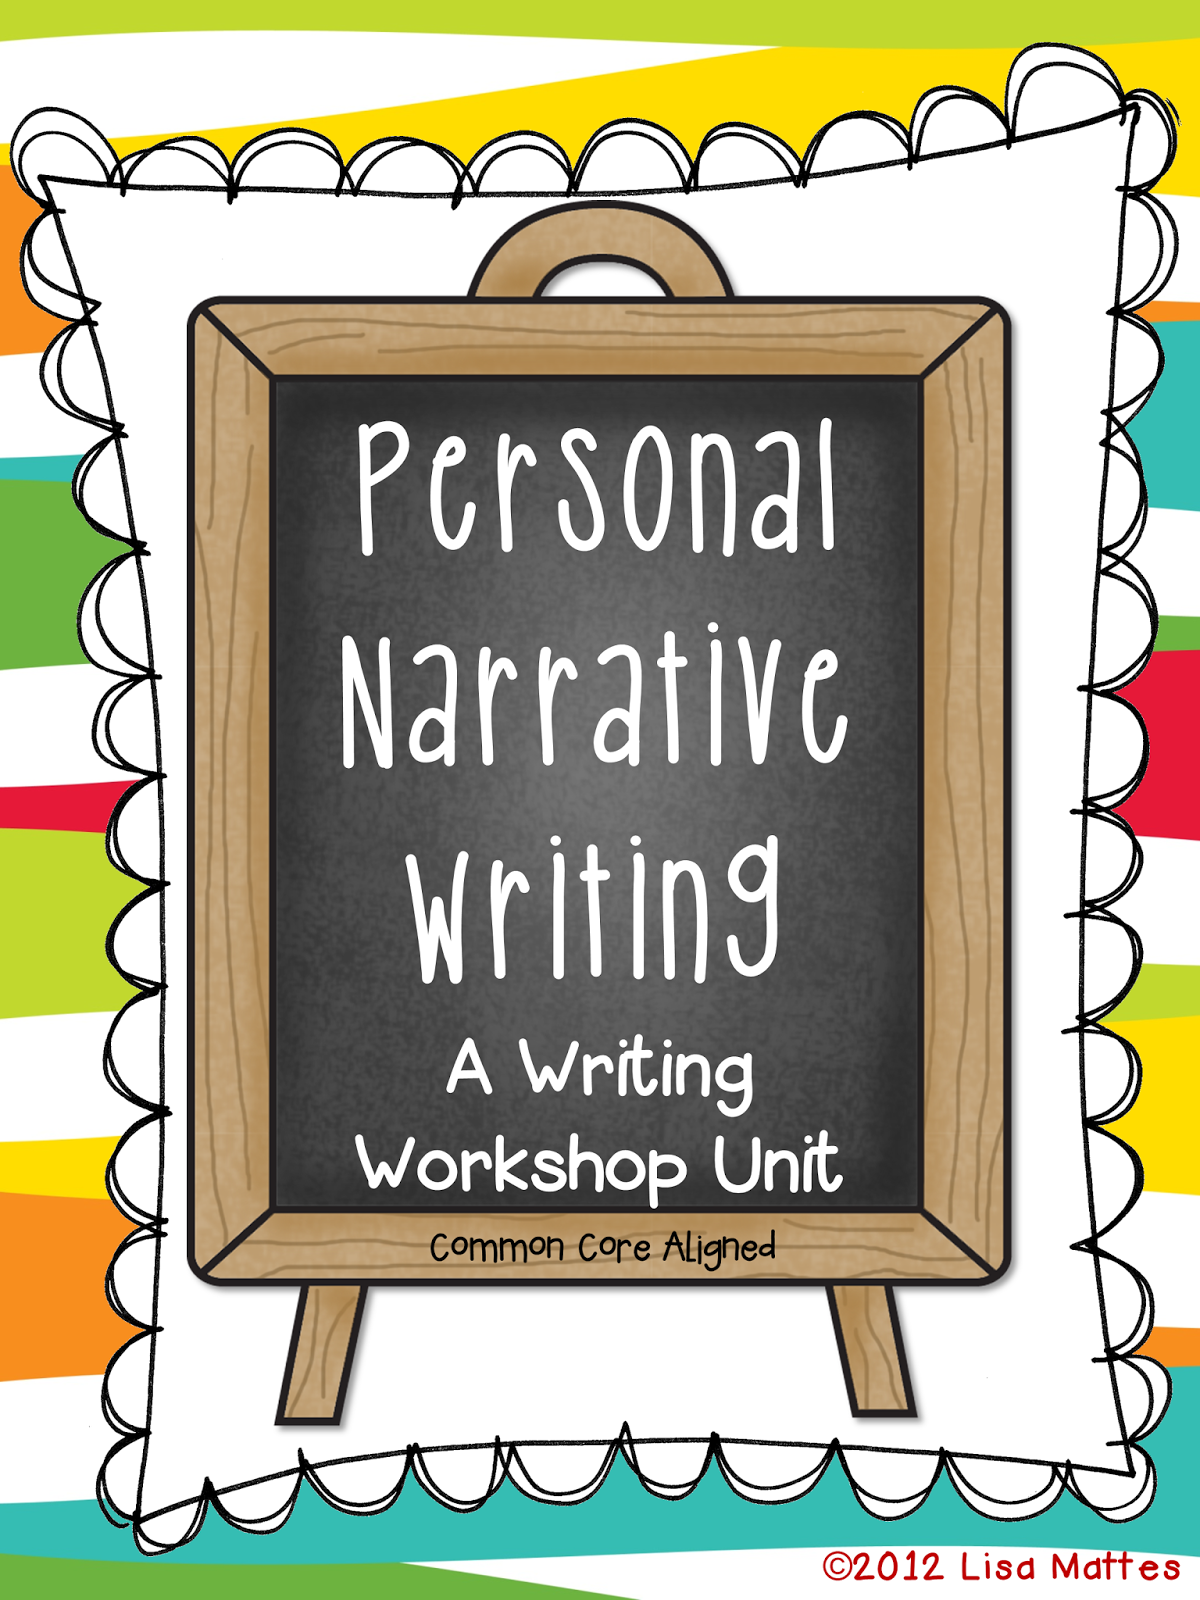 Writers workshop personal essay